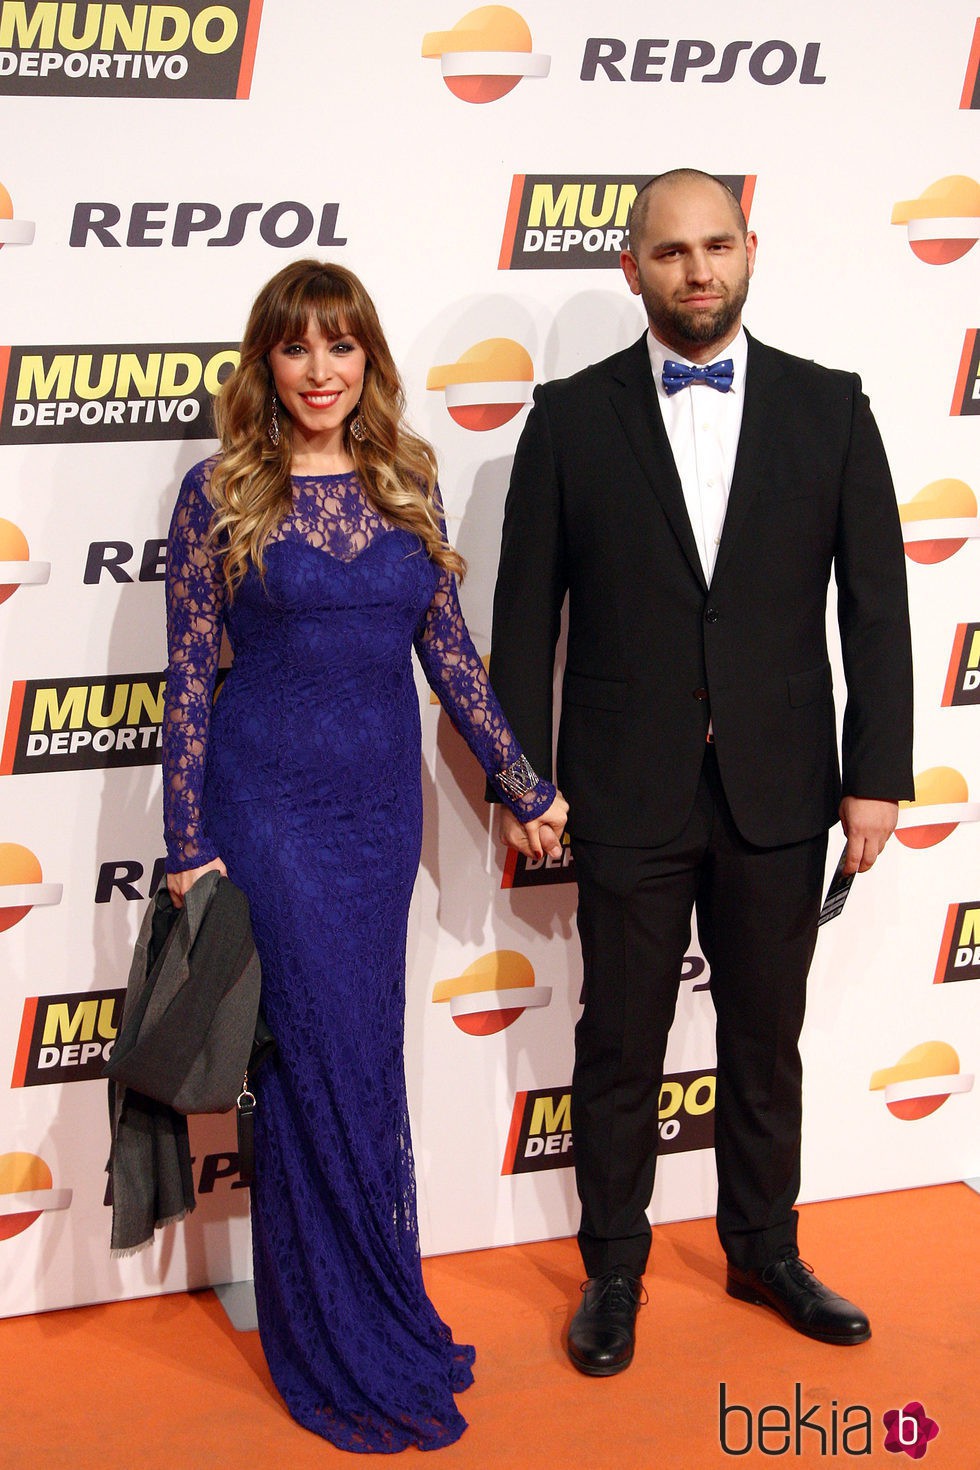 Gisela y José Ángel Ortega Mora en la gala de Mundo Deportivo 2016